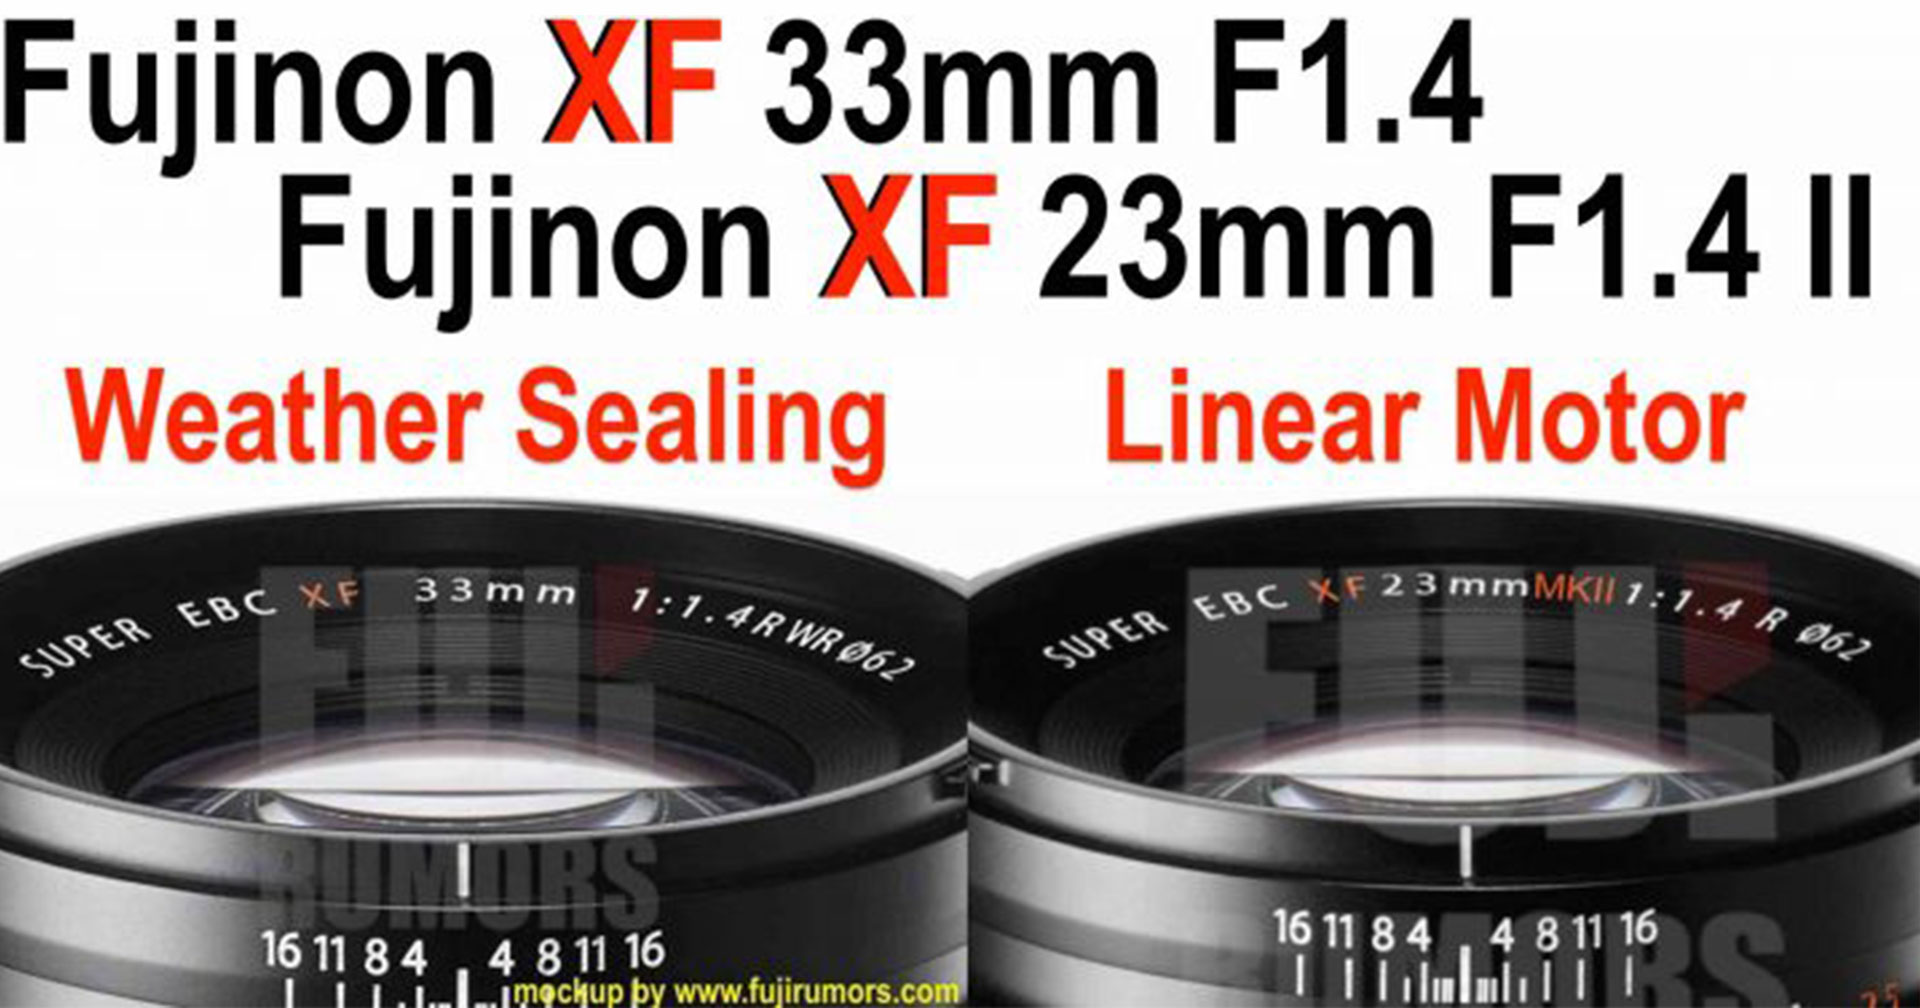 ยังมีอีก! Fujinon XF 33mm F1.4 เตรียมเปิดตัวพร้อม XF 23mm F1.4 II วันที่ 2 ก.ย.